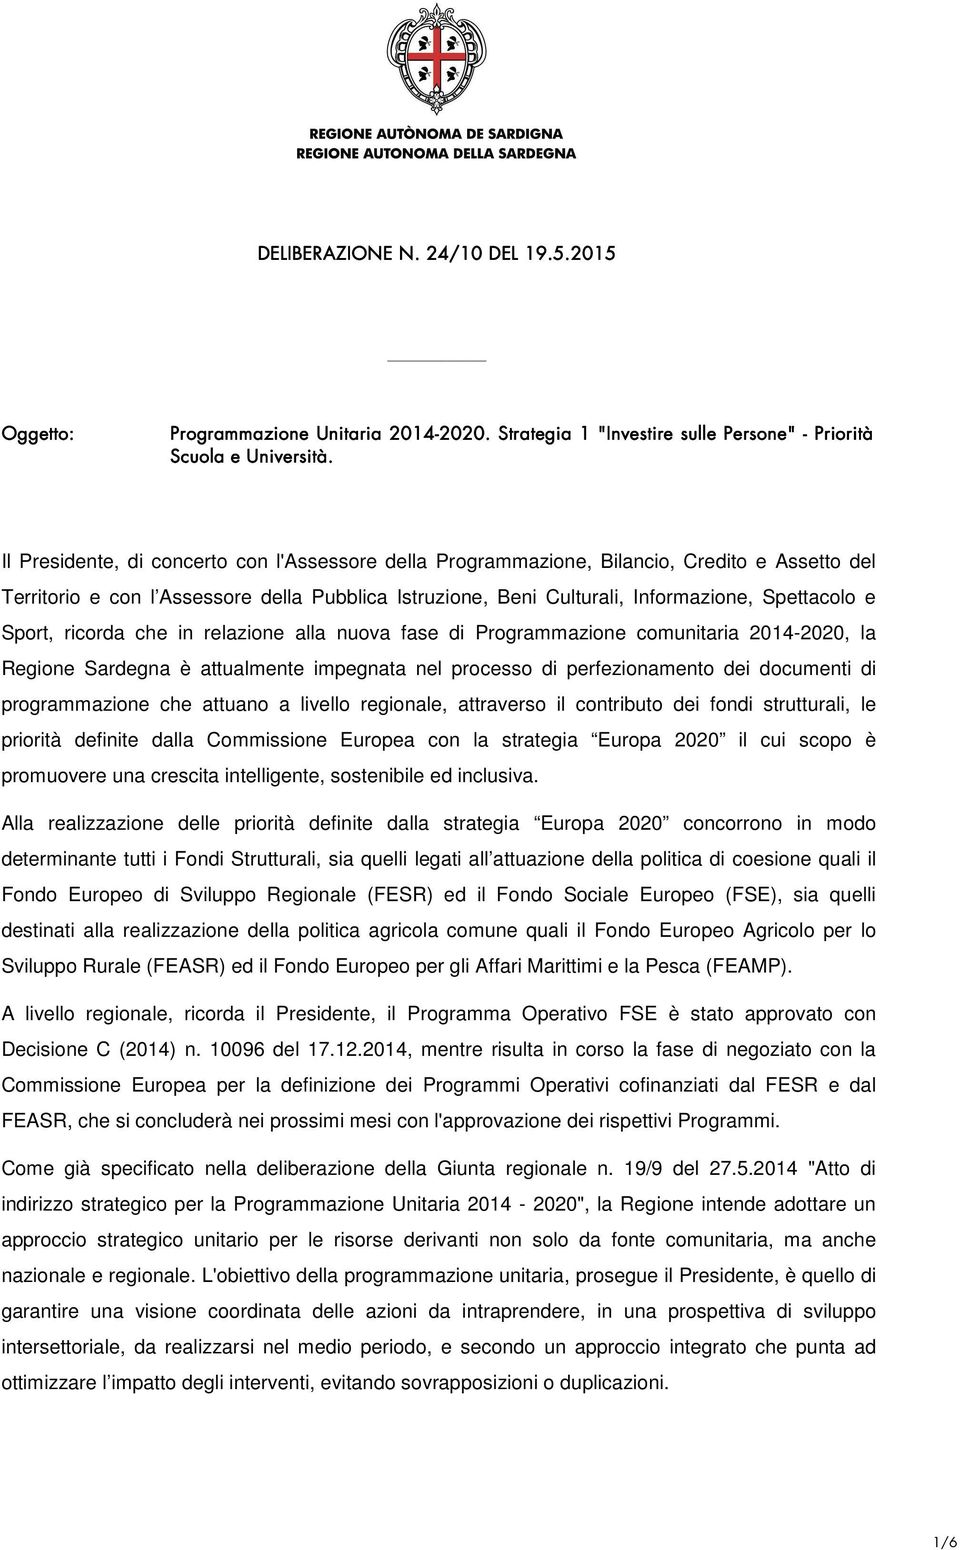 Sport, ricorda che in relazione alla nuova fase di Programmazione comunitaria 2014-2020, la Regione Sardegna è attualmente impegnata nel processo di perfezionamento dei documenti di programmazione